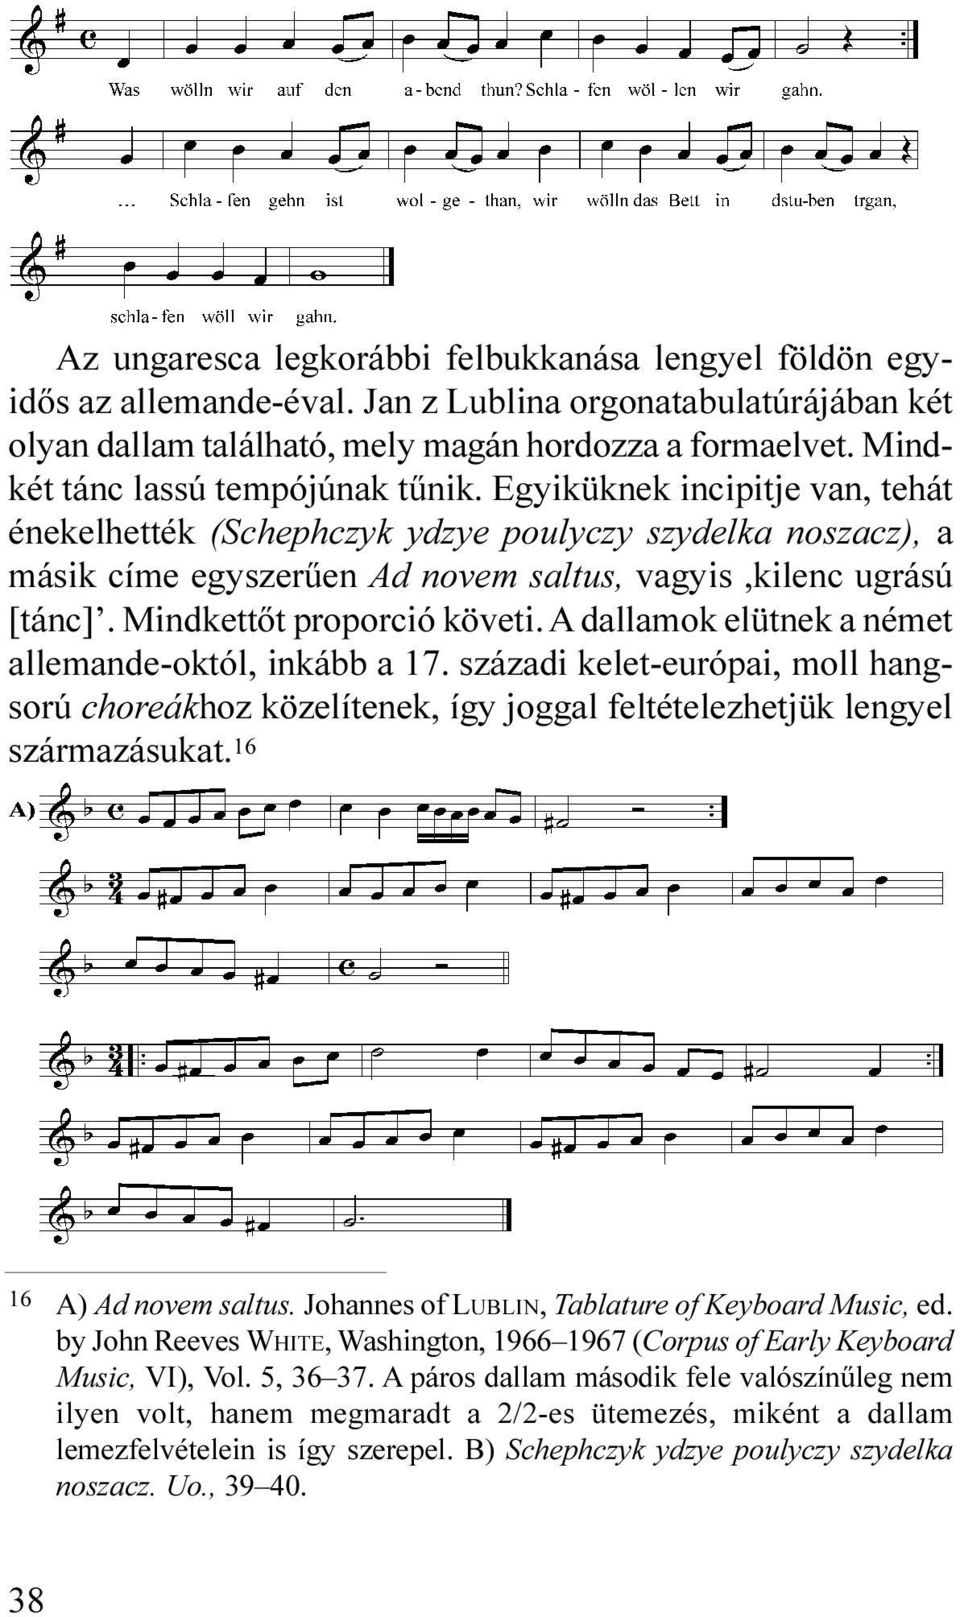 Mindkettõt proporció követi. A dallamok elütnek a német allemande-októl, inkább a 17. századi kelet-európai, moll hangsorú choreákhoz közelítenek, így joggal feltételezhetjük lengyel származásukat.